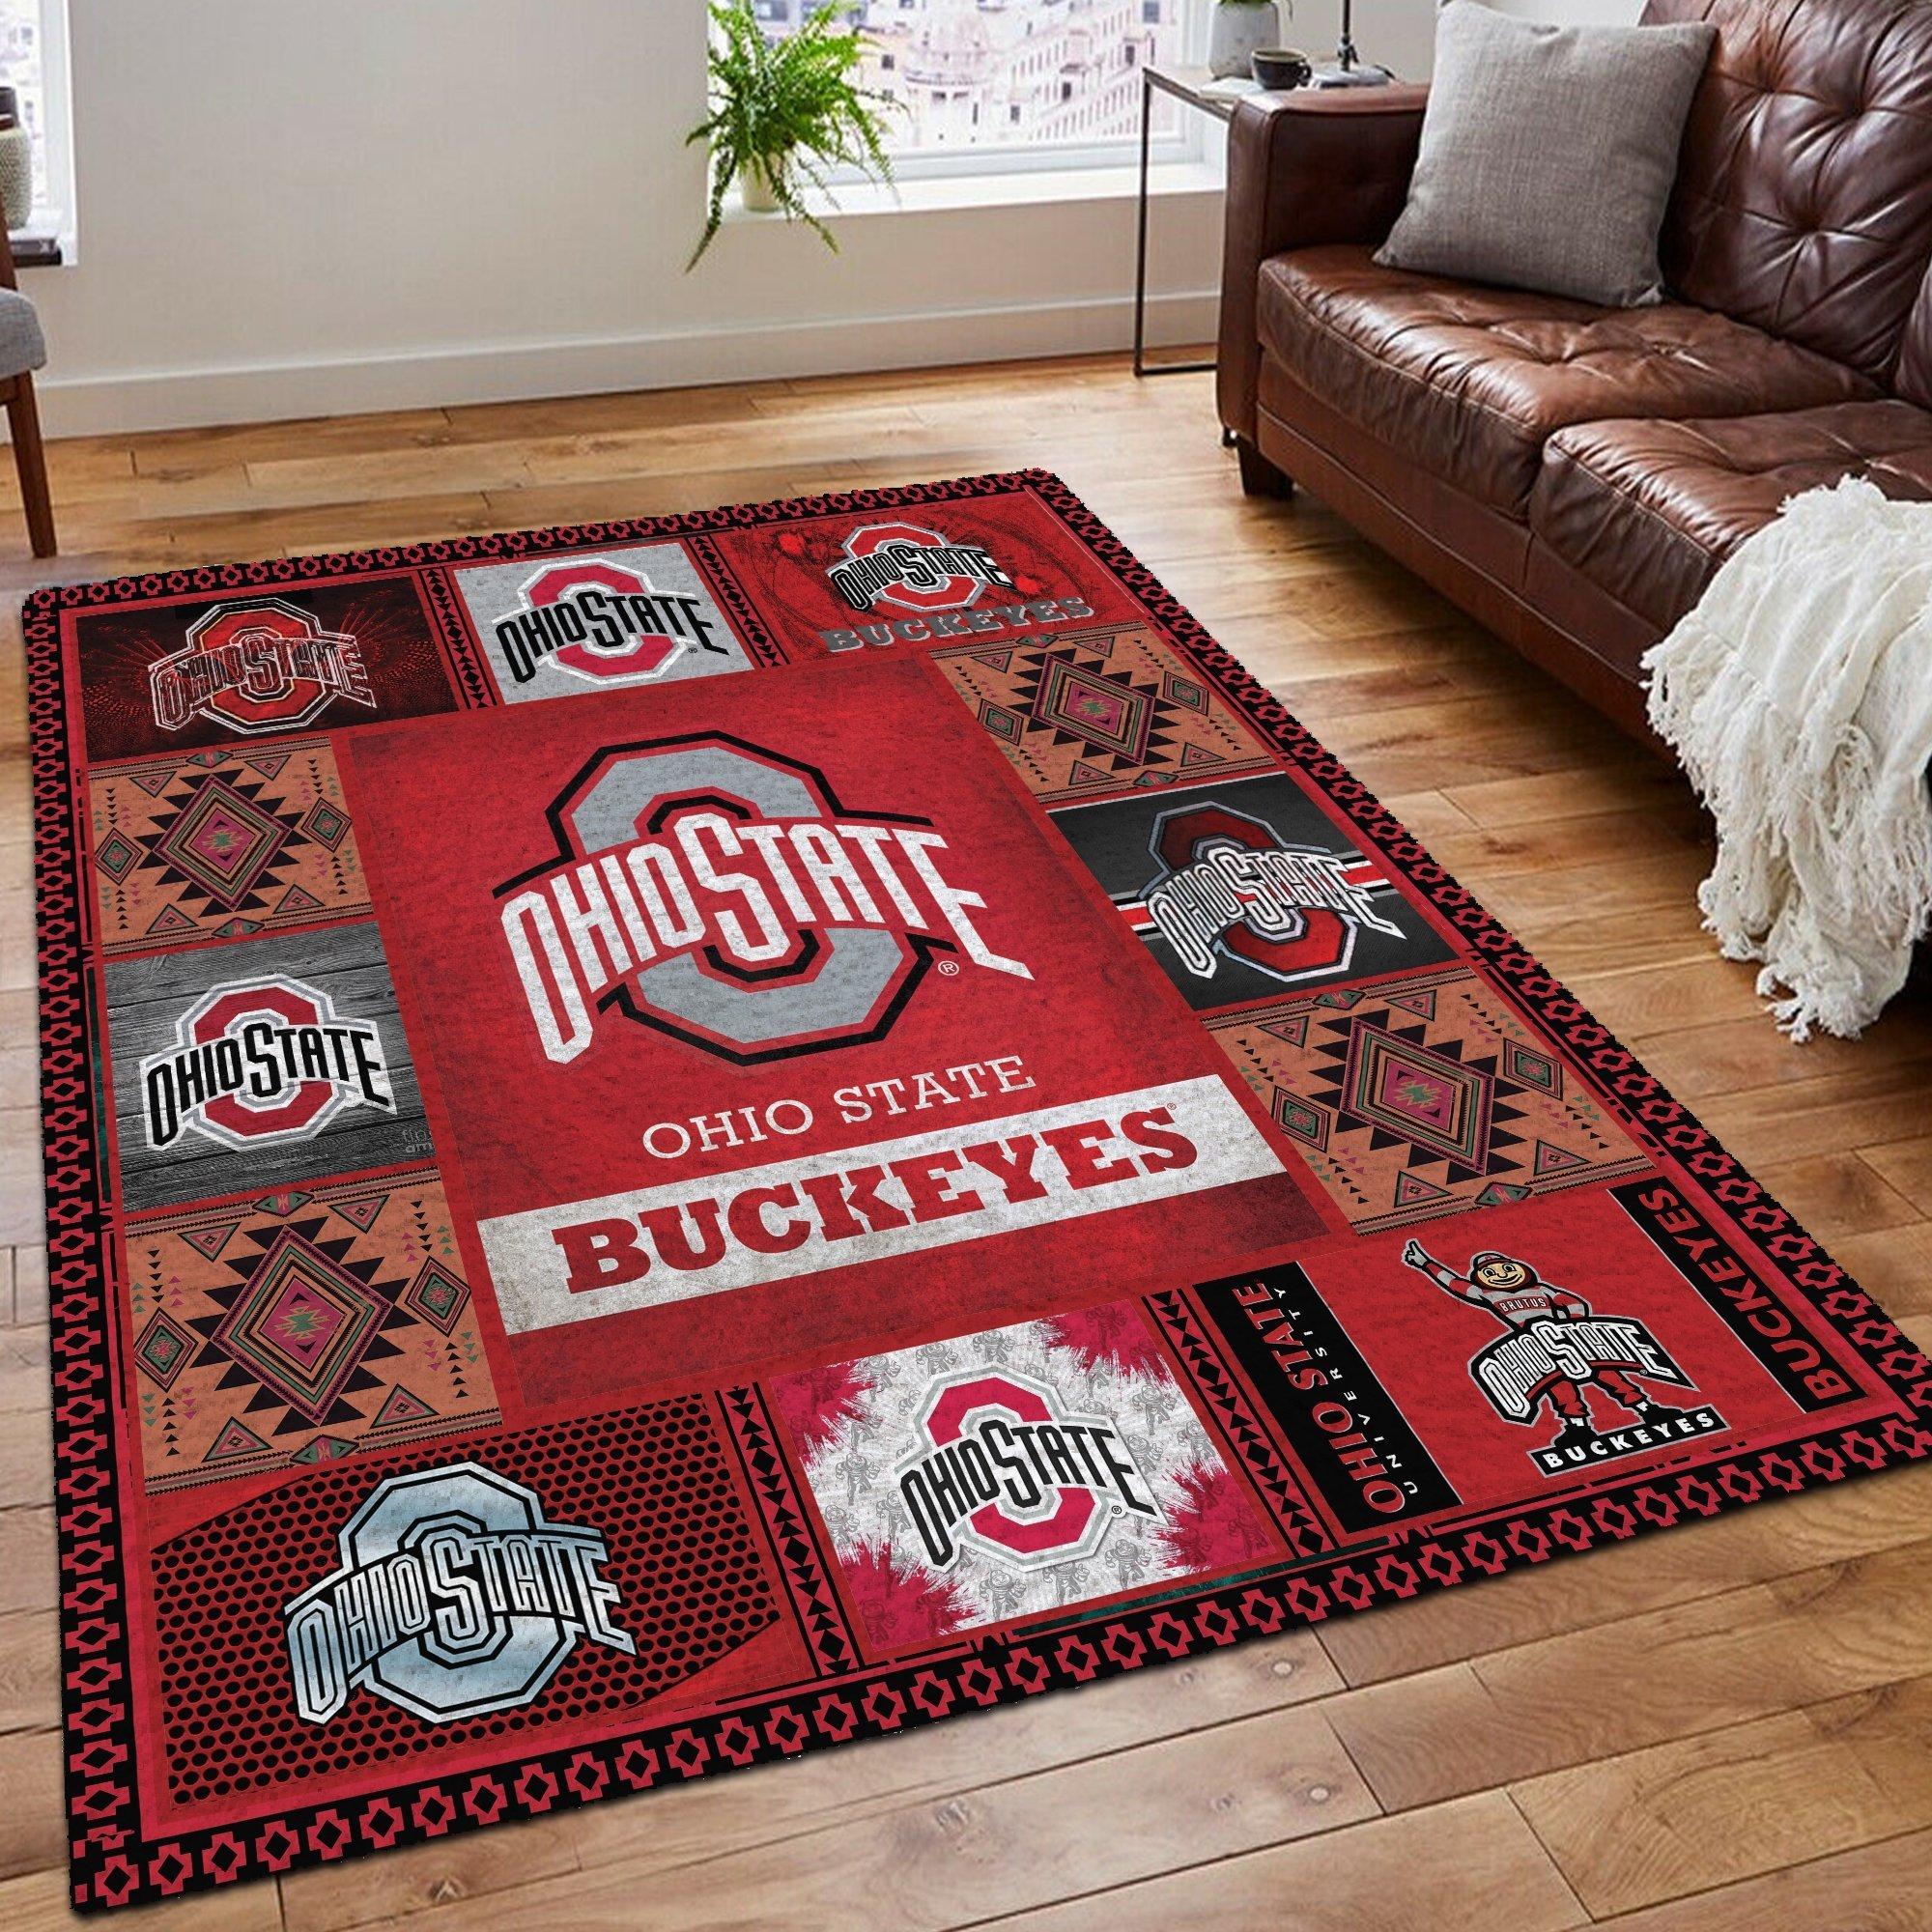 Ohio state buckeyes living room rug - medium